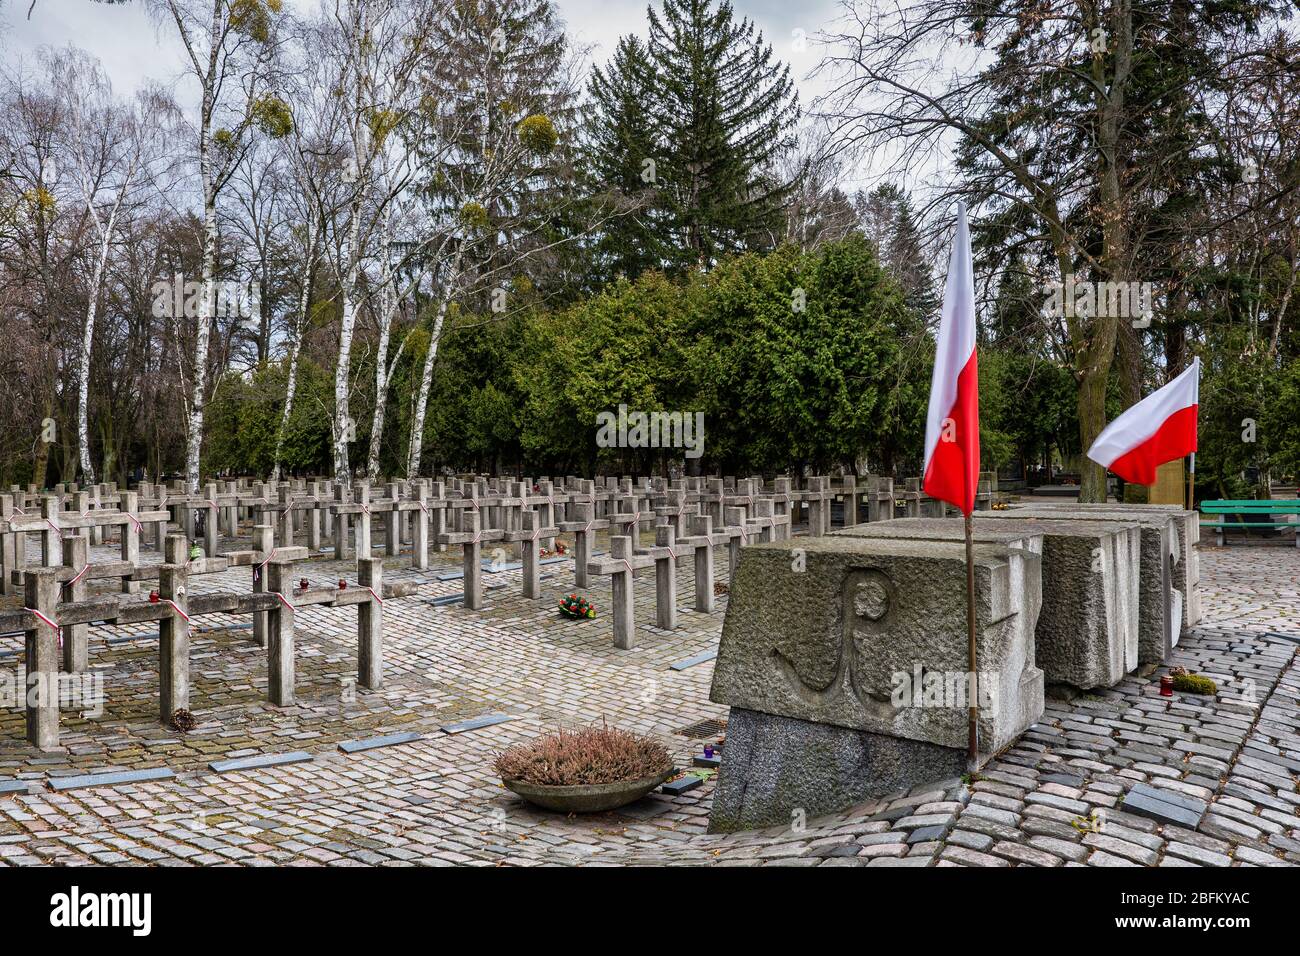 Varsovie, Pologne - 21 mars 2020 : Cimetière militaire de Powazki avec tombes de soldats qui ont combattu et sont morts en 1944 soulèvement de Varsovie pendant la seconde Guerre mondiale Banque D'Images